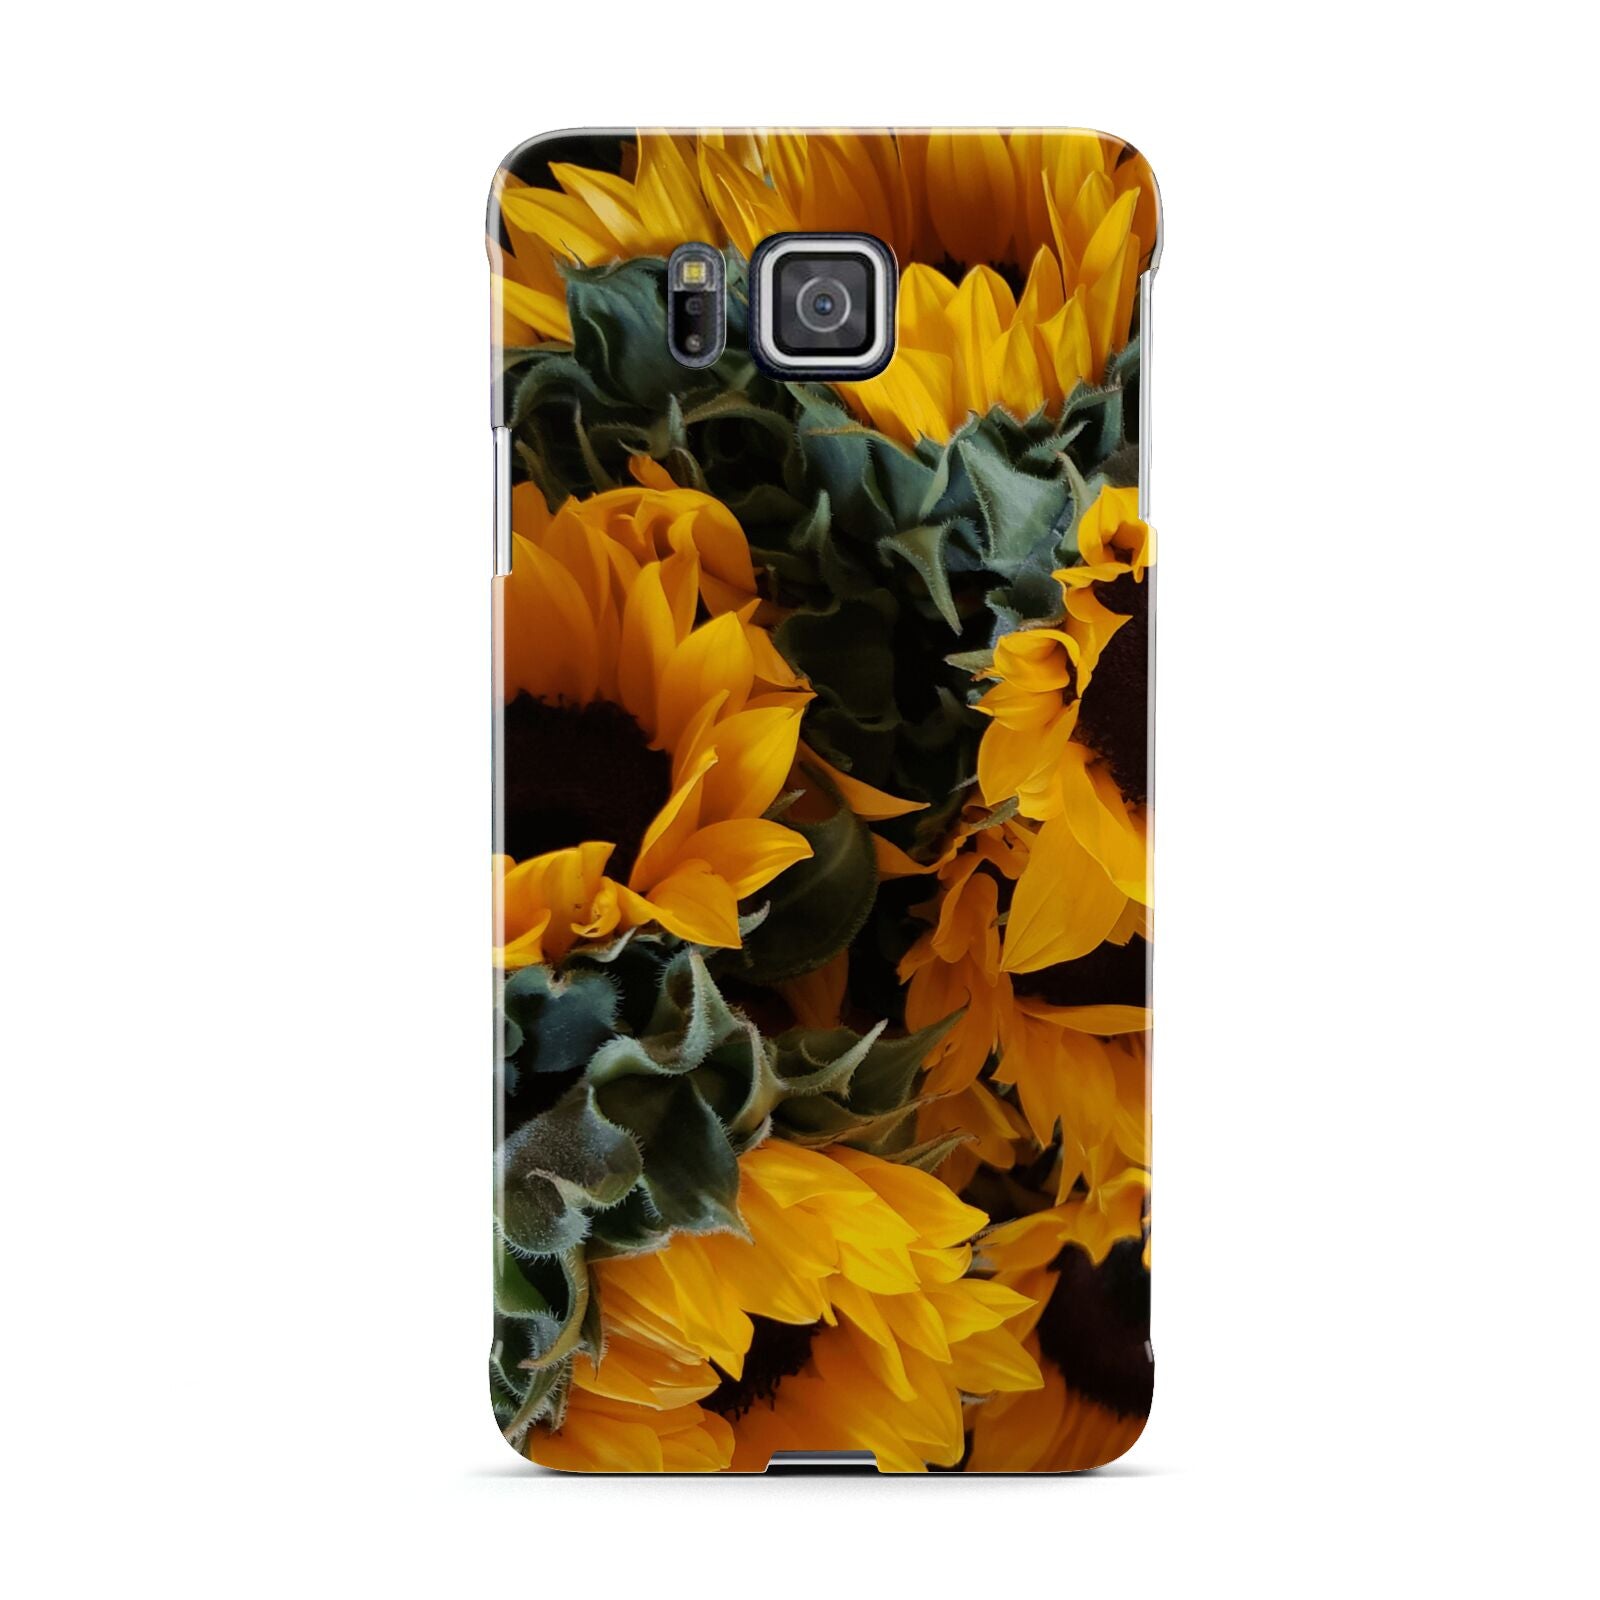 Sunflower Samsung Galaxy Alpha Case